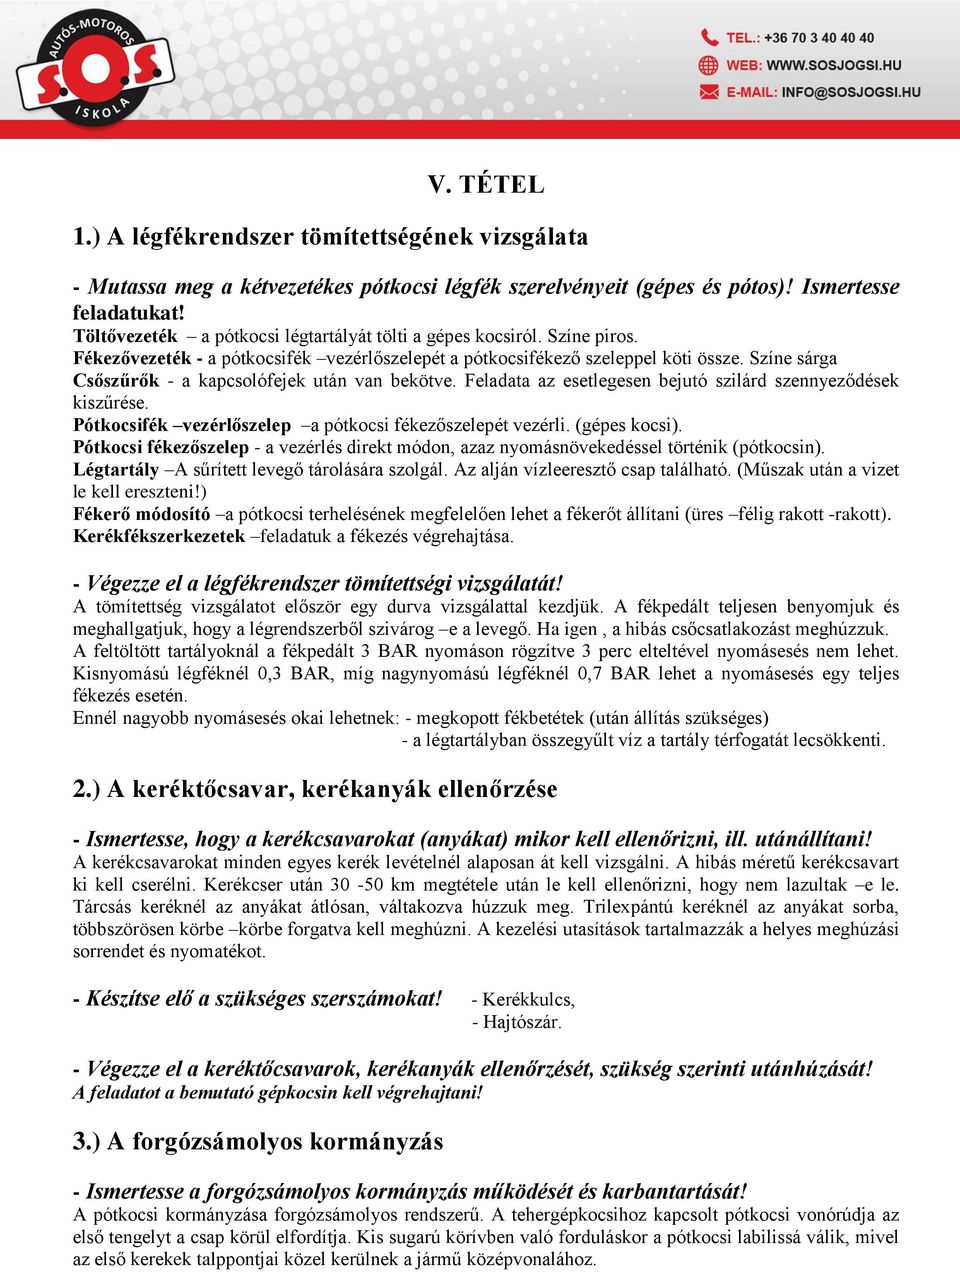 SEGÉDLET. Biztonsági ellenőrzés és üzemeltetési ismeretek tanulásához E  kategória. - PDF Ingyenes letöltés